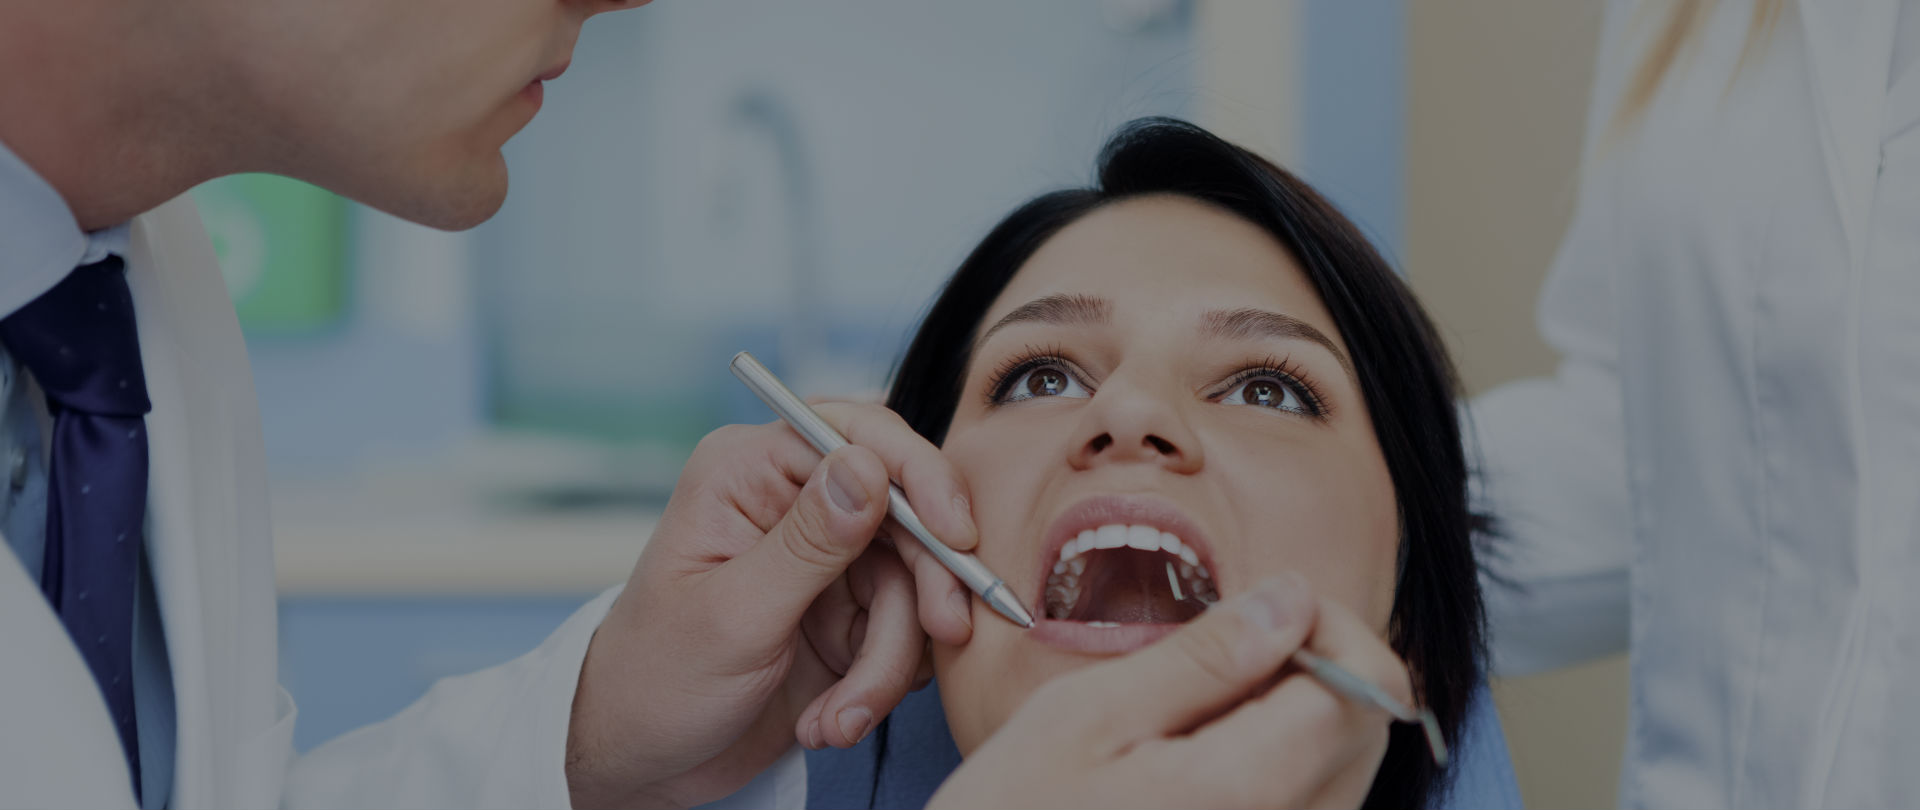 Established Dentistry Practice